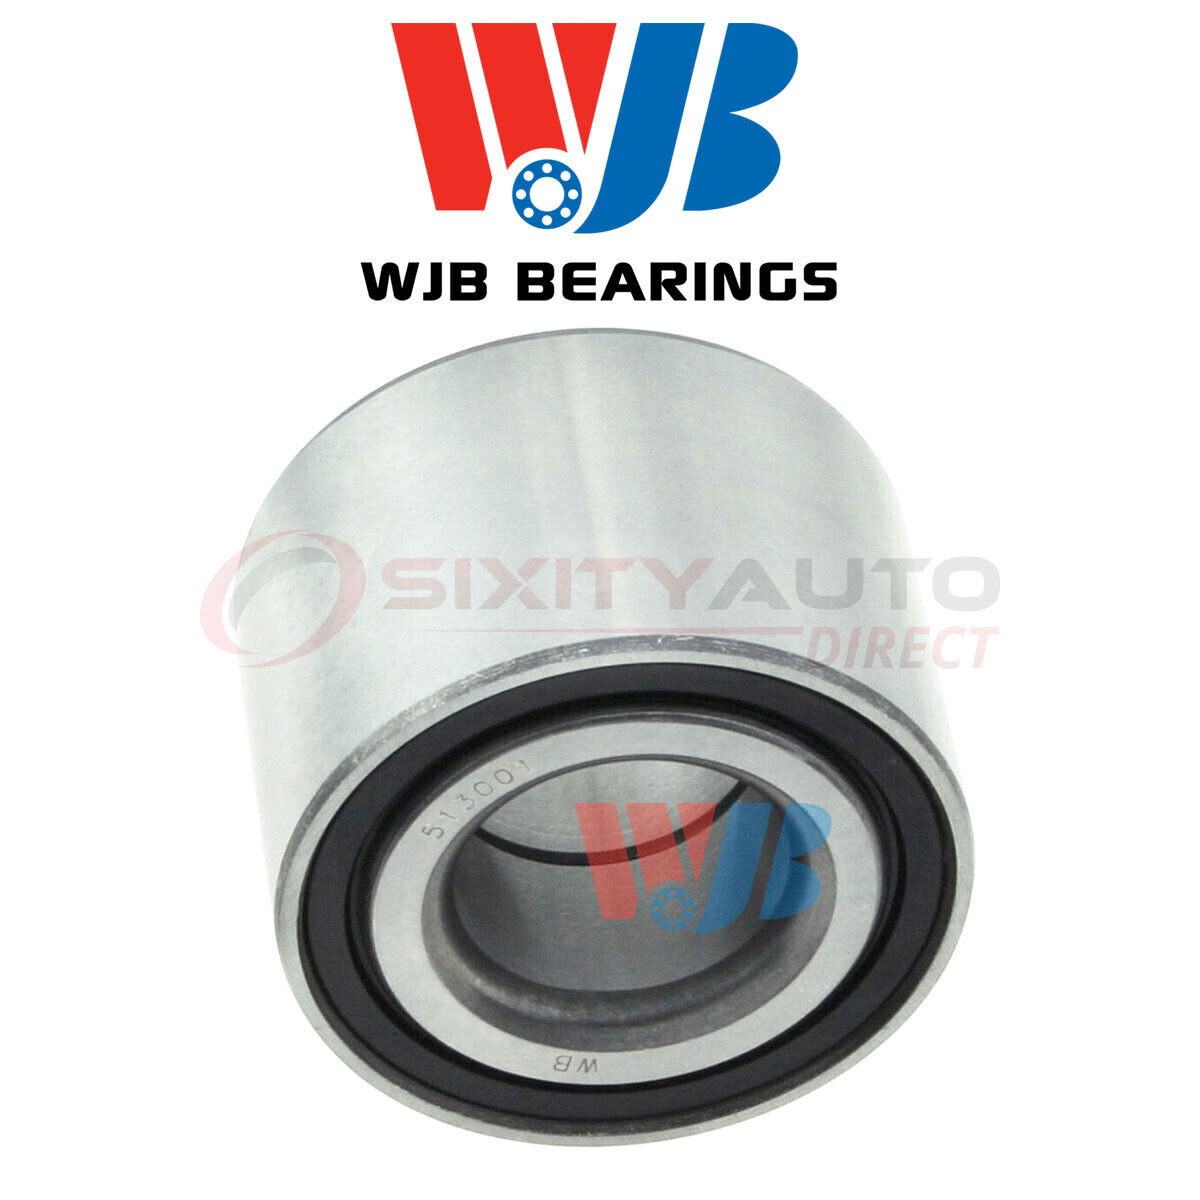 WJB Wheel Bearing for 1988-1991 Mercury Topaz 2.3L L4 - Axle Hub Tire rk